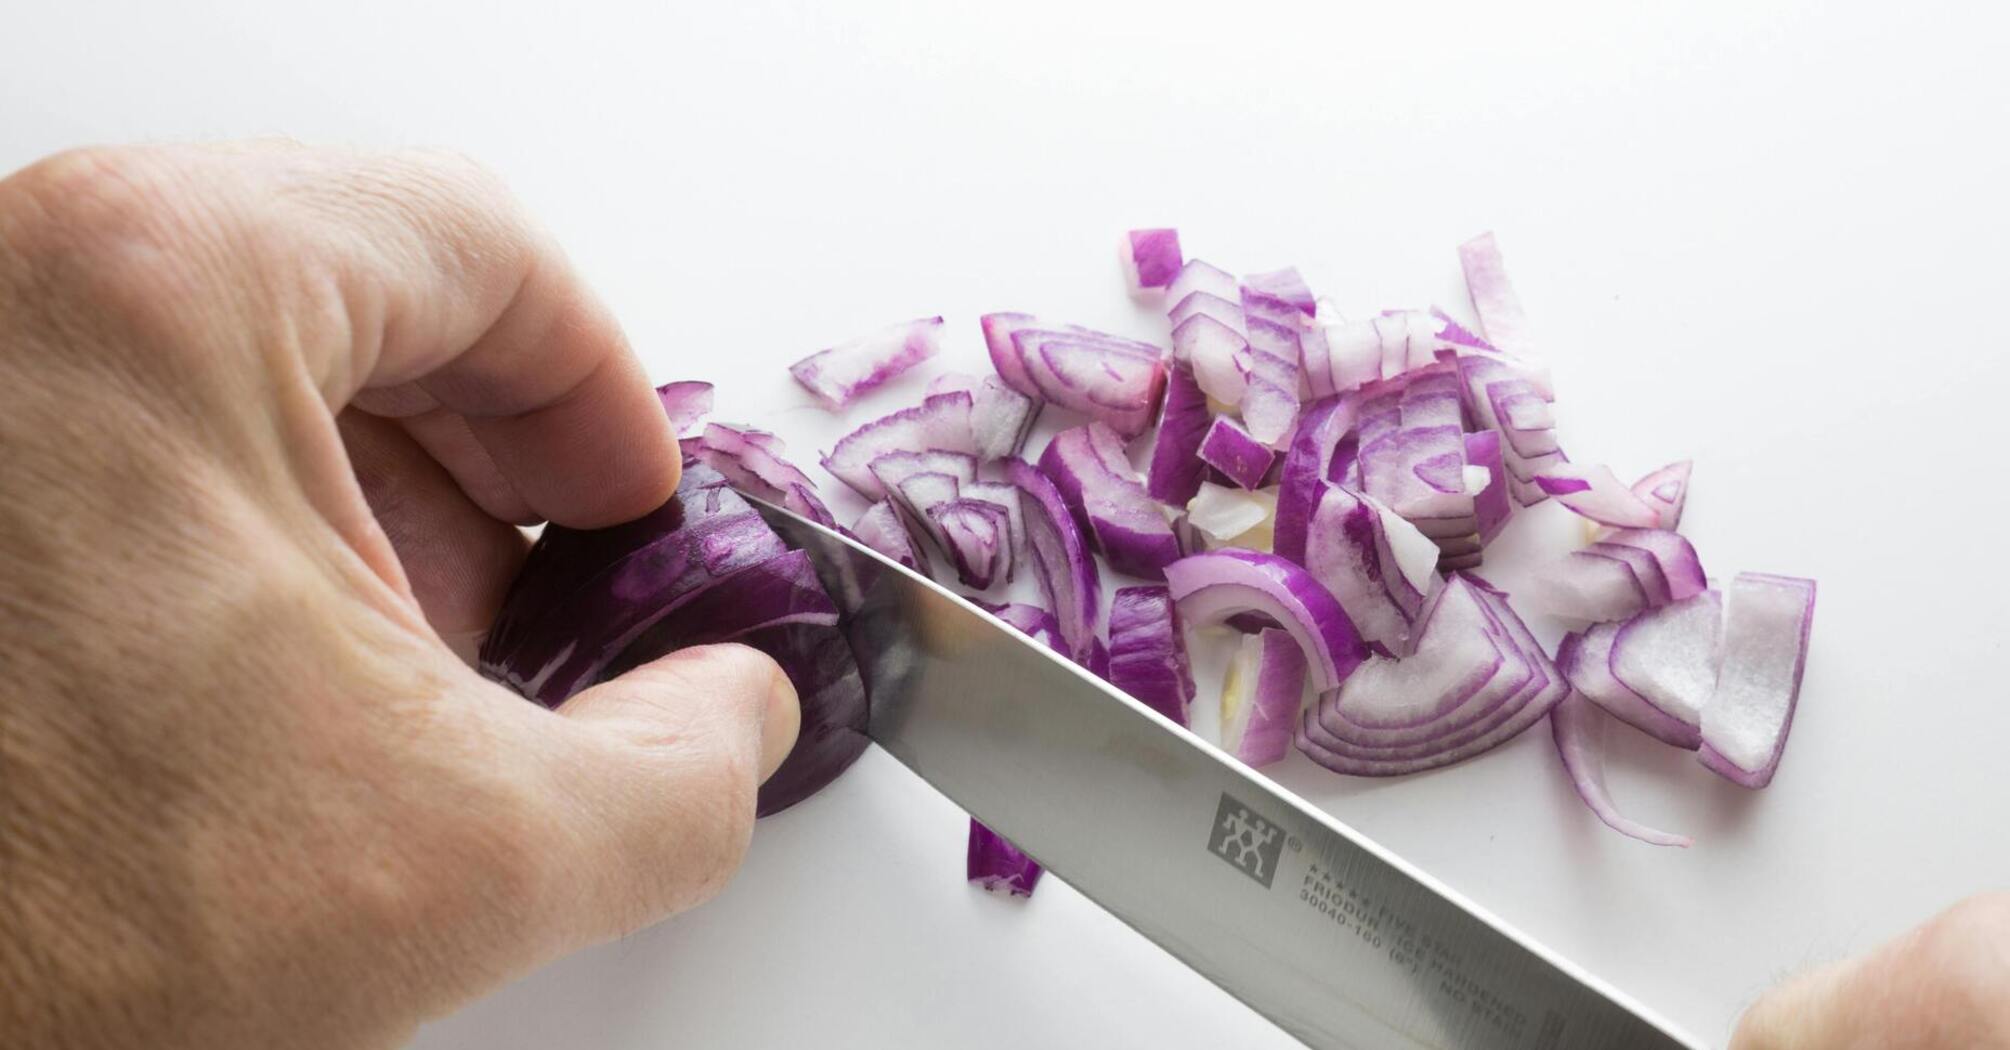 Как нарезать лук без слез: 3 практичных лайфхака